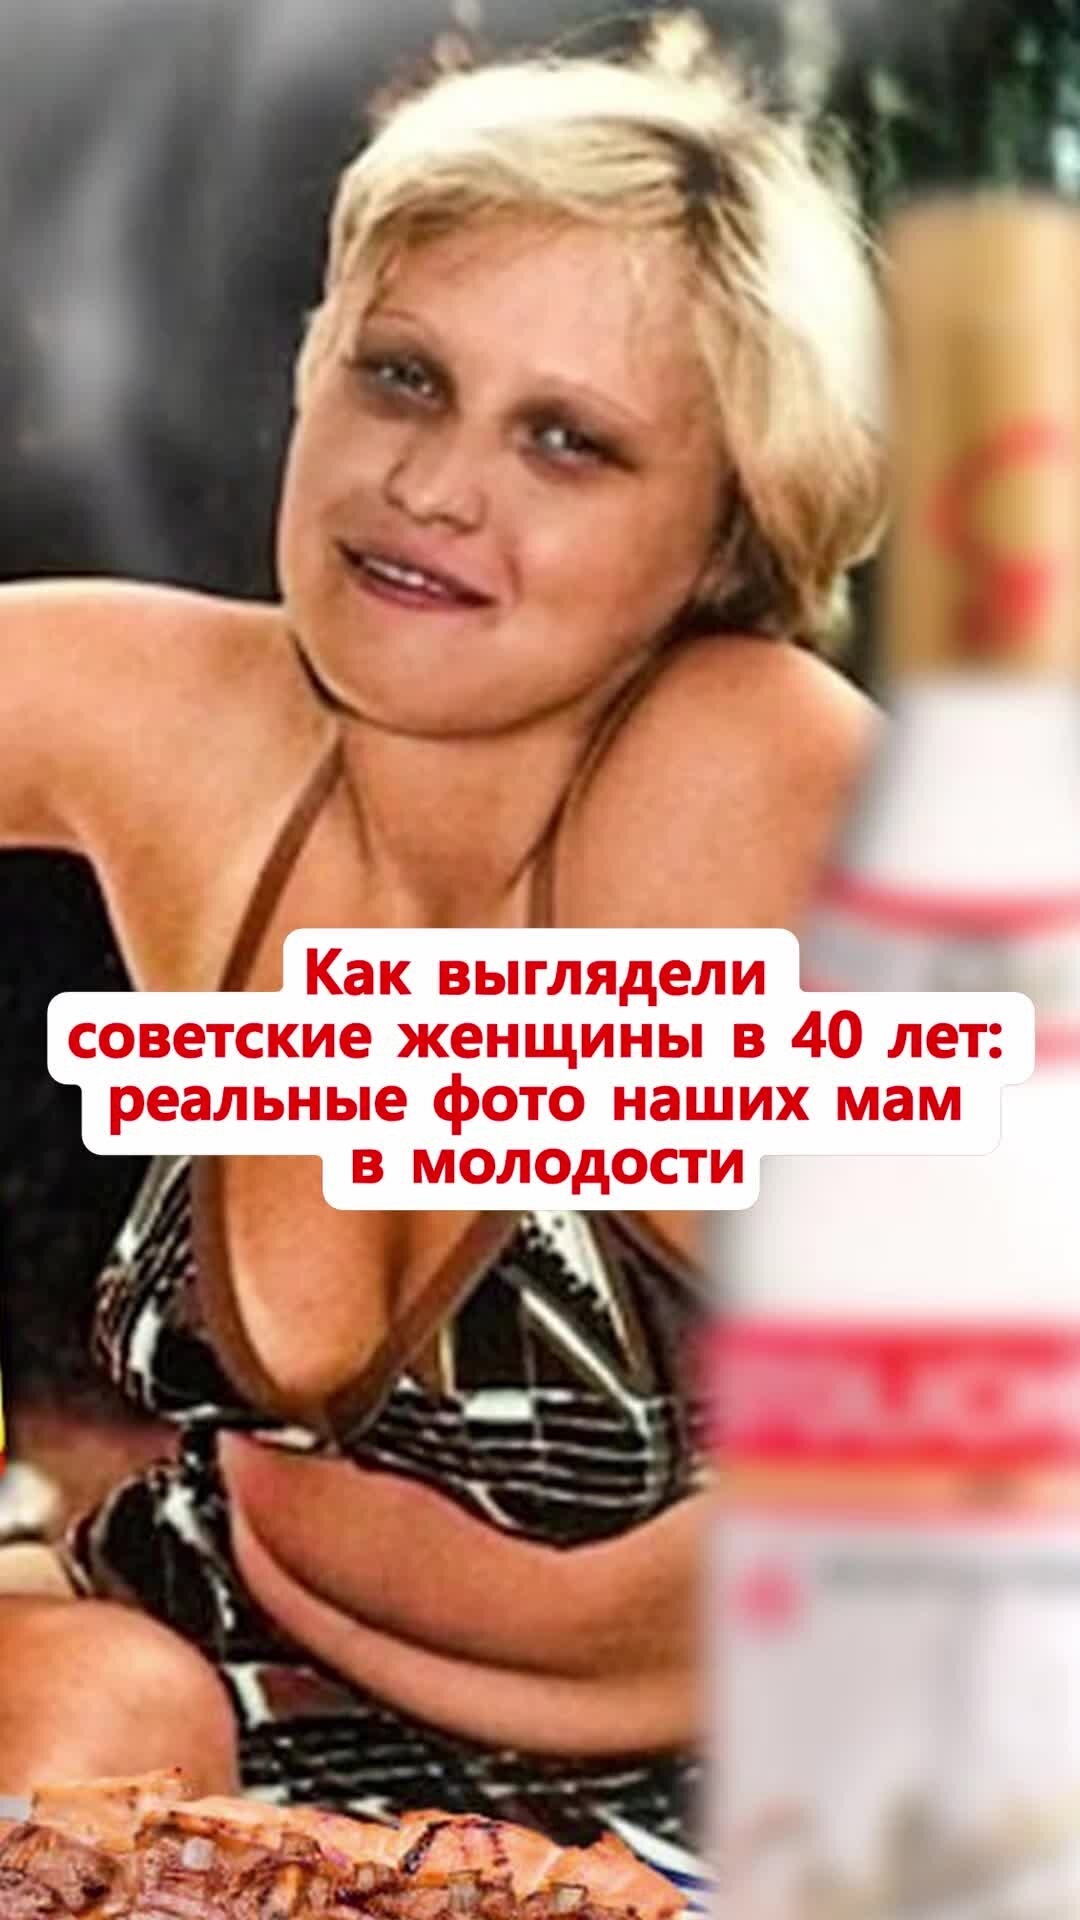 Горячие личные фото актрисы Арины Постниковой — дебютантки «100 самых сексуальных женщин страны»